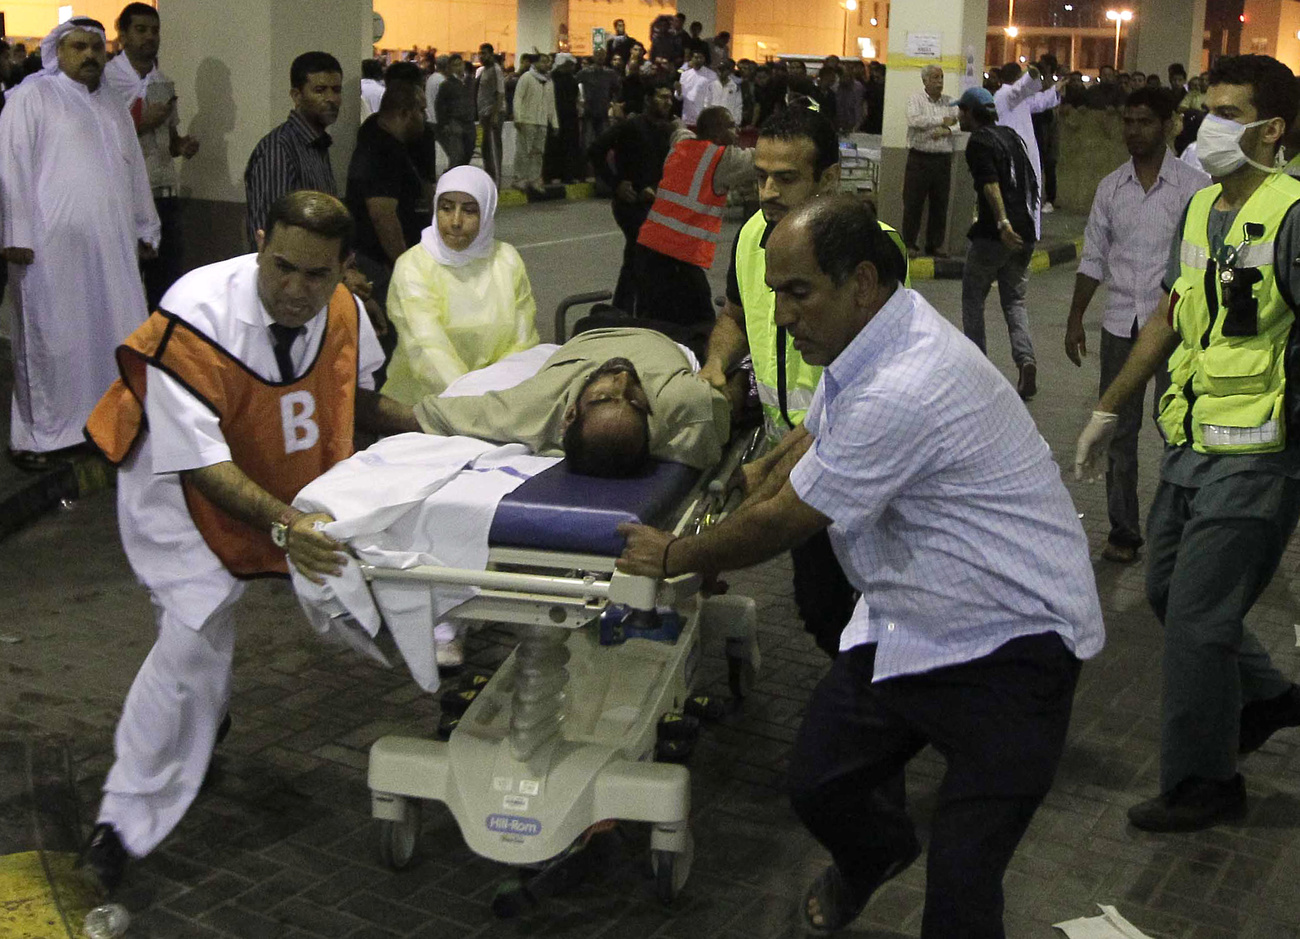 A Guardian egyik, megbízható forrásnak bizonyult bahreini kommentelője szerint hirtelen sok sérült jelent meg a szalmaníjai kórháznál, ahol a sérült tüntetőket ápolják a velük szimpatizáló orvosok